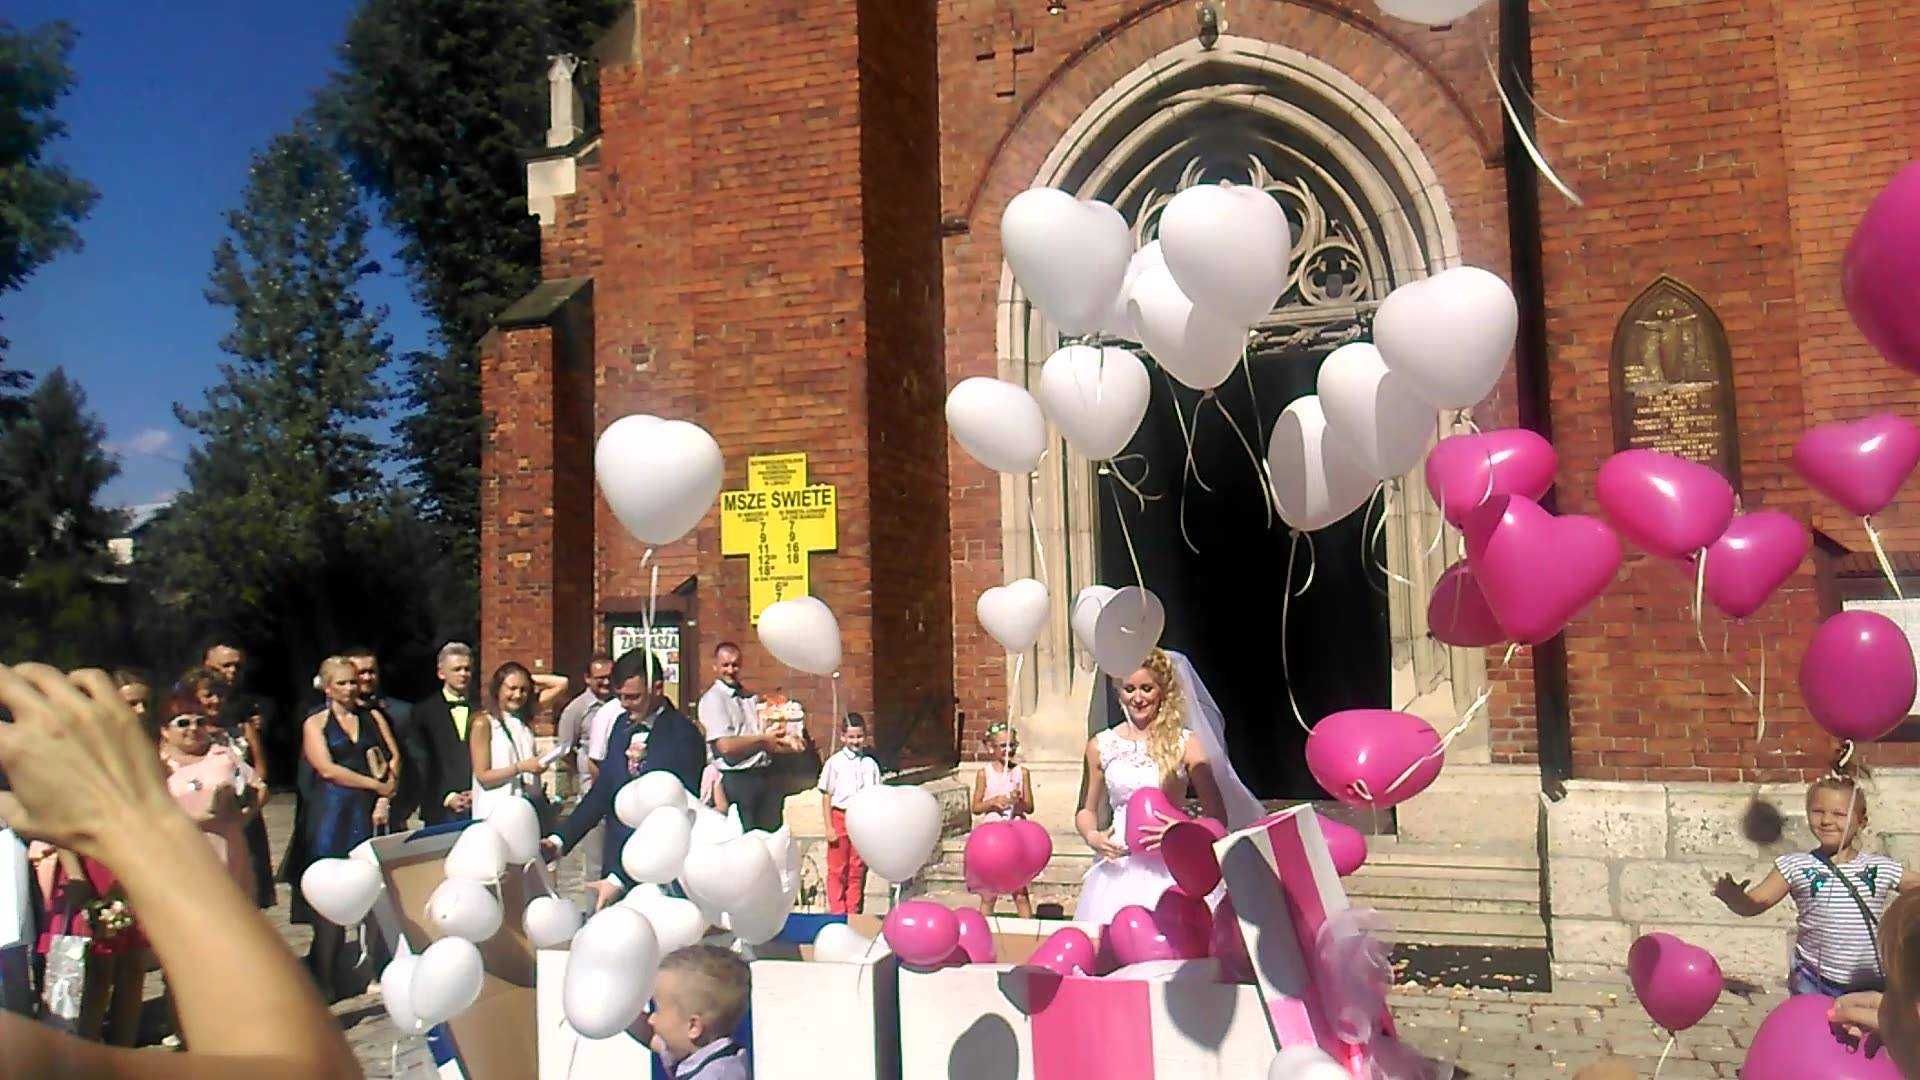 Pudło balony ślub hel wypuszczanie urodziny prezent Jaworzno Trzebinia